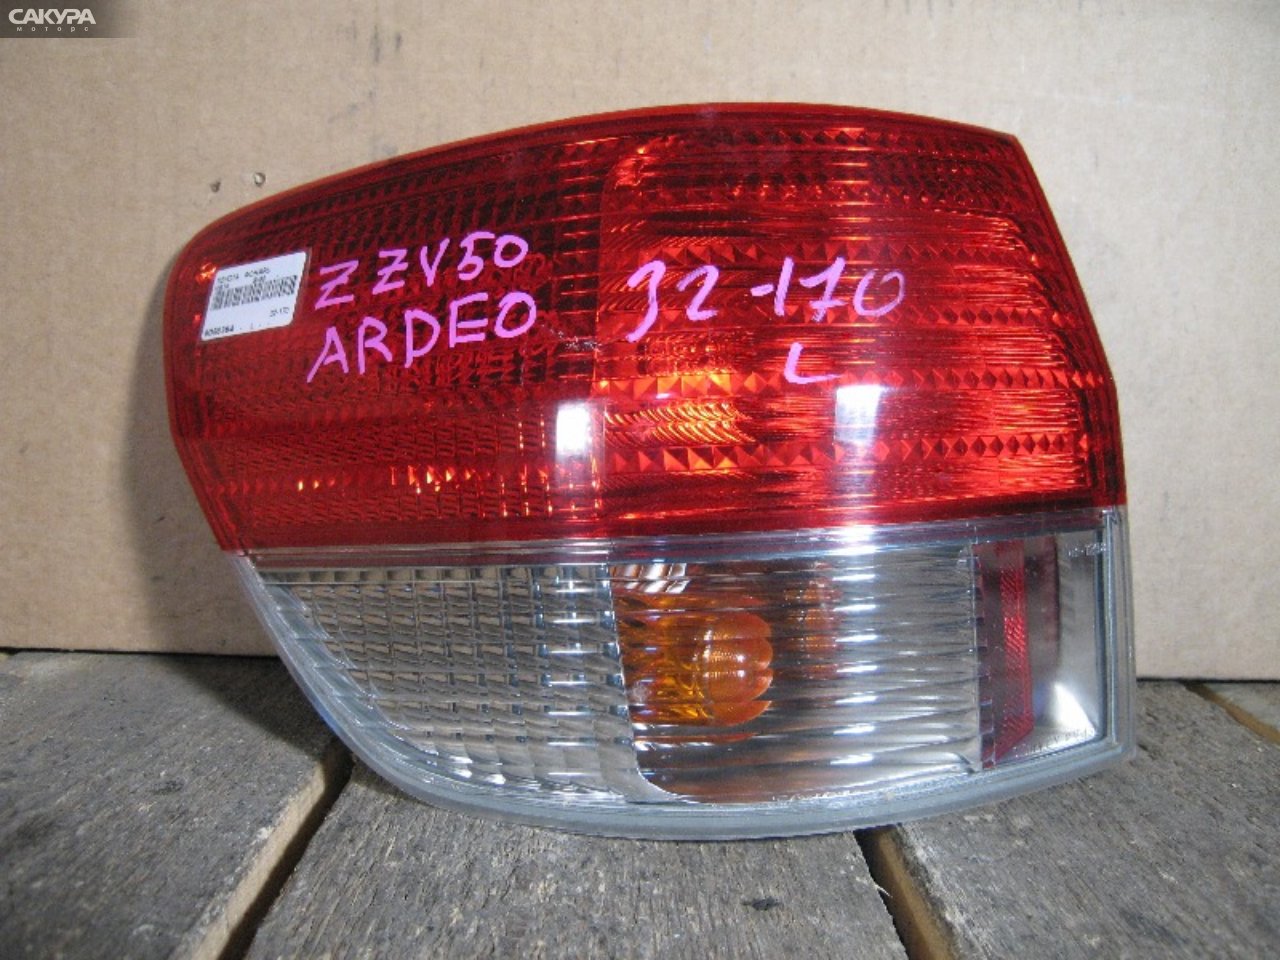 Фонарь стоп-сигнала левый Toyota Vista SV50 32-170: купить в Сакура Абакан.